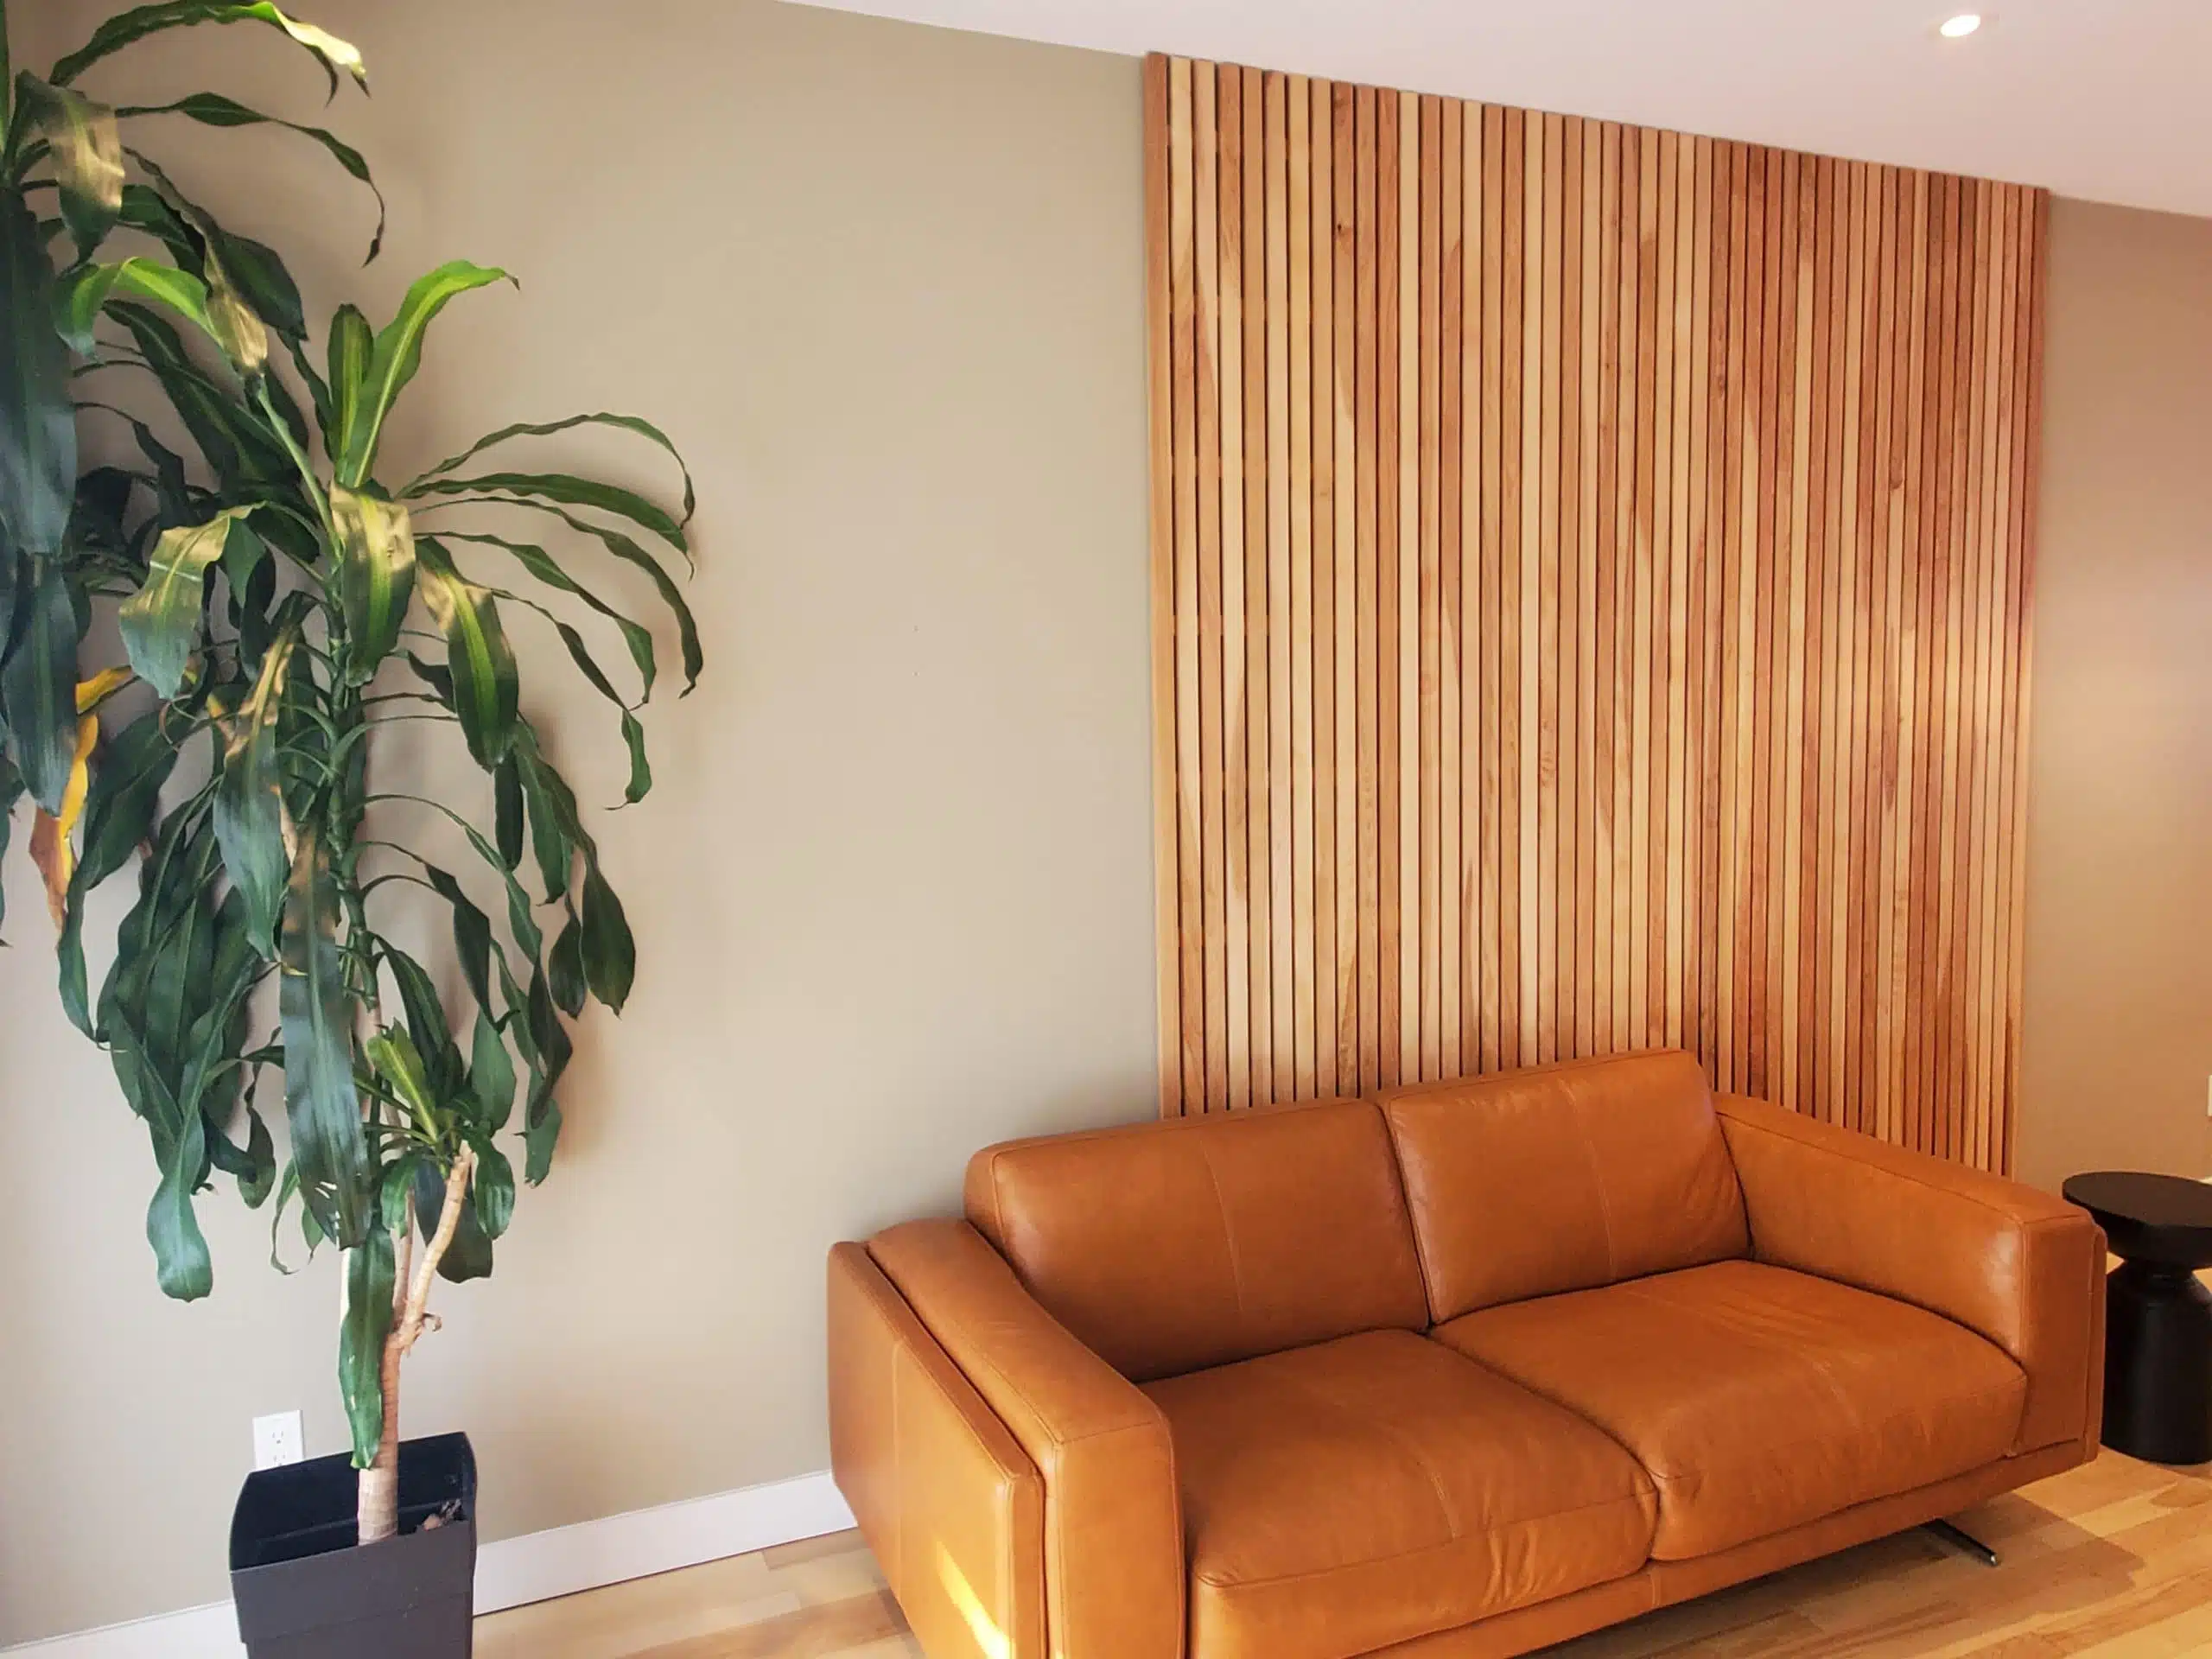 Choisir le bois pour les murs d'une chambre - Vertika Design